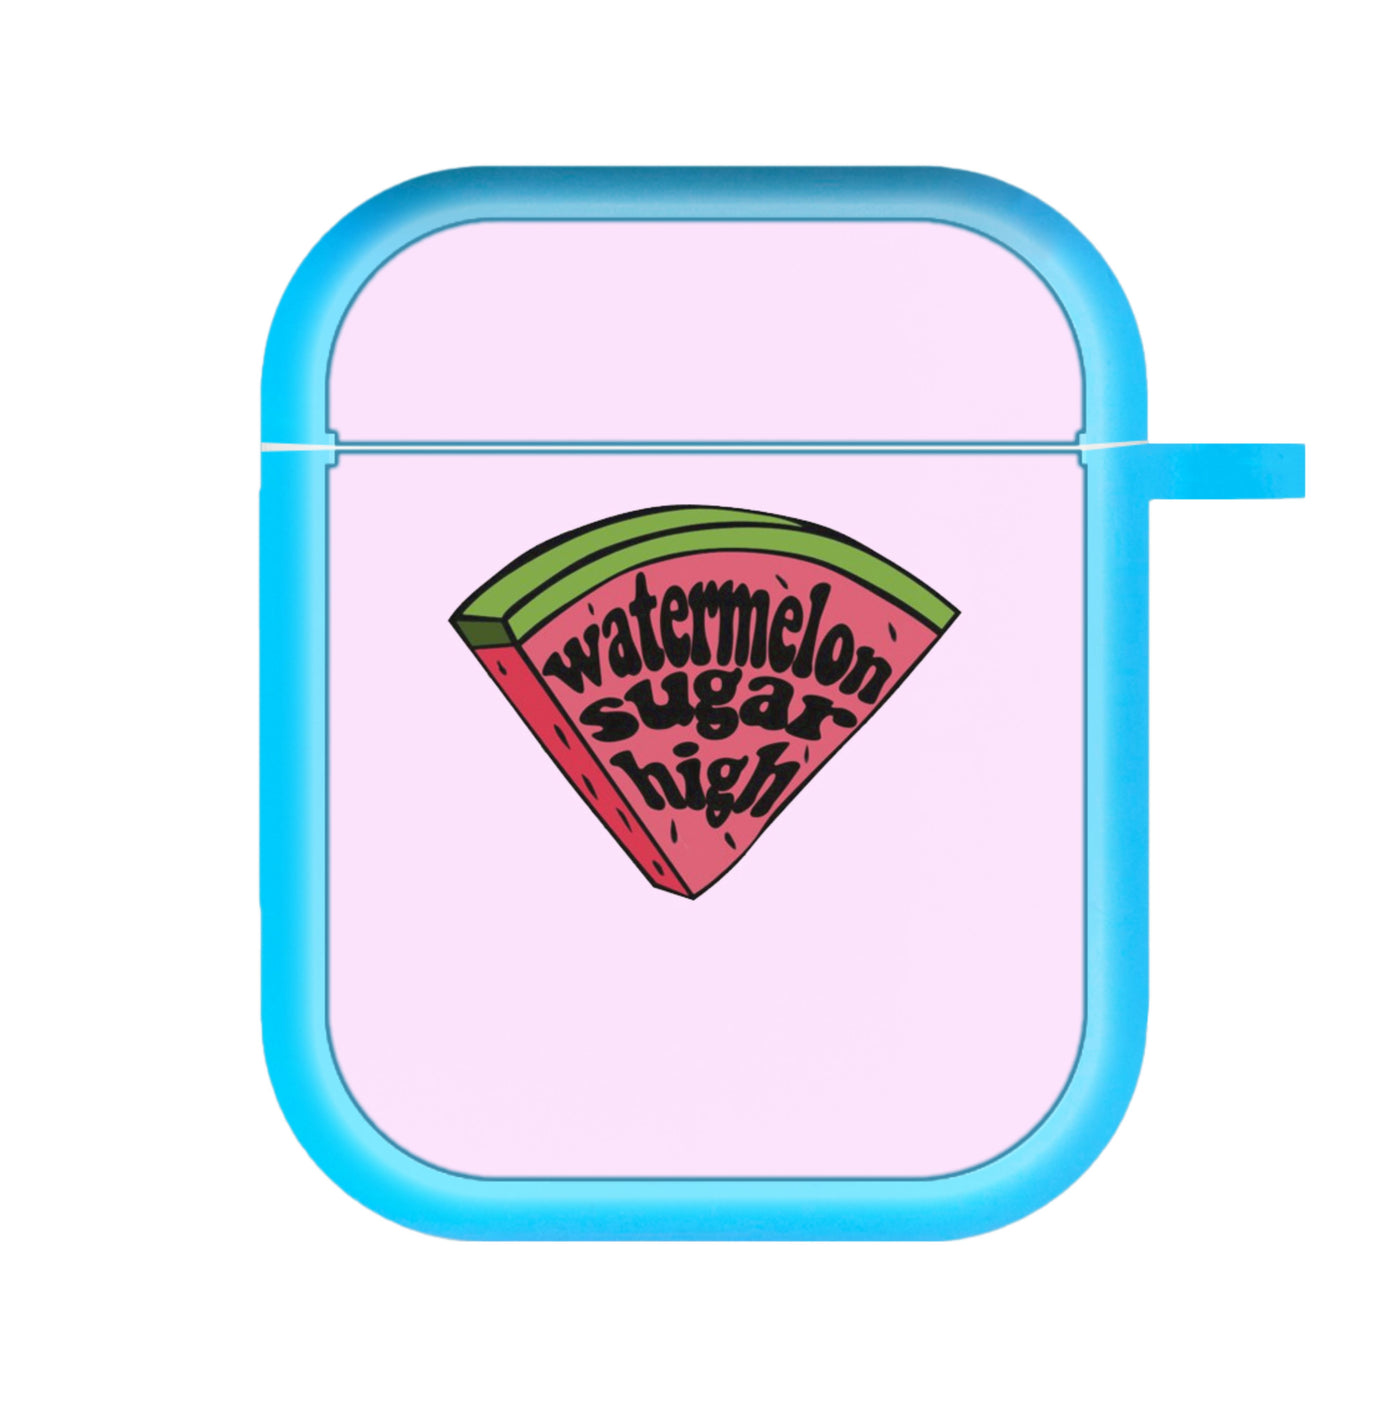 Watermelon Sugar High - Harry AirPods Case